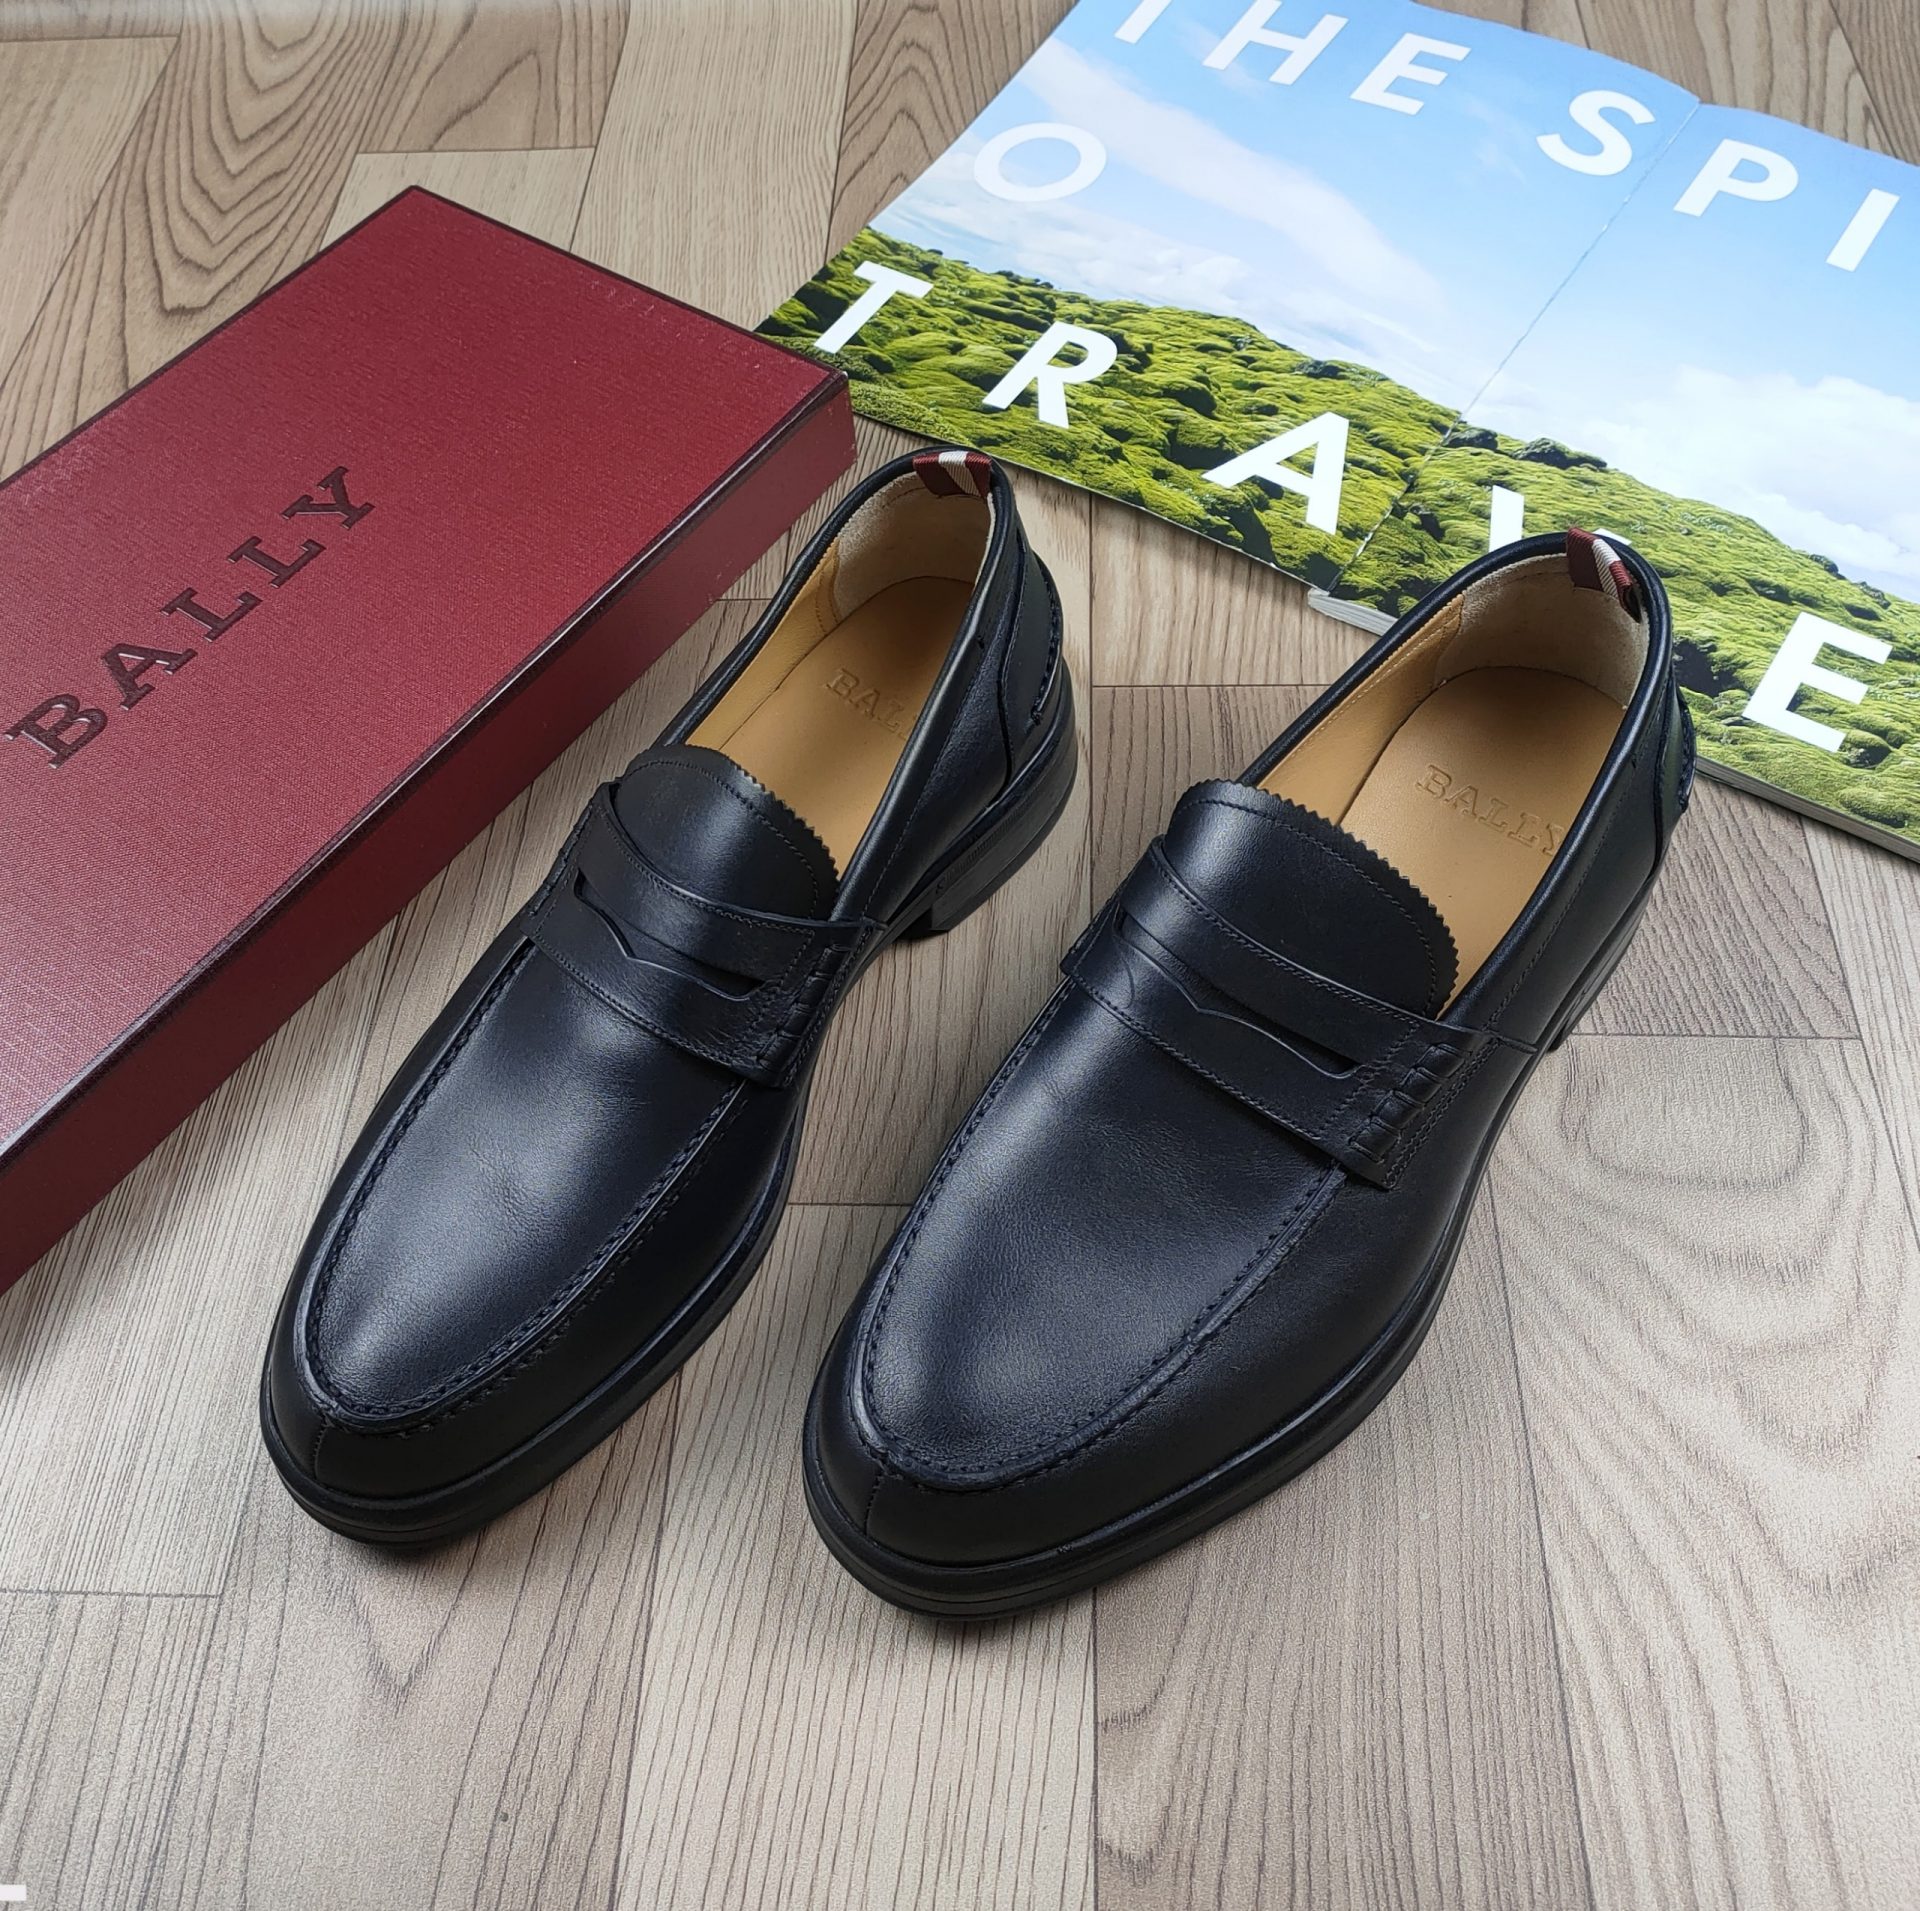 Giày nam xuất khẩu GIÀY BALLY - MS3450 thời trang, cao cấp, chính hãng tại  HCM